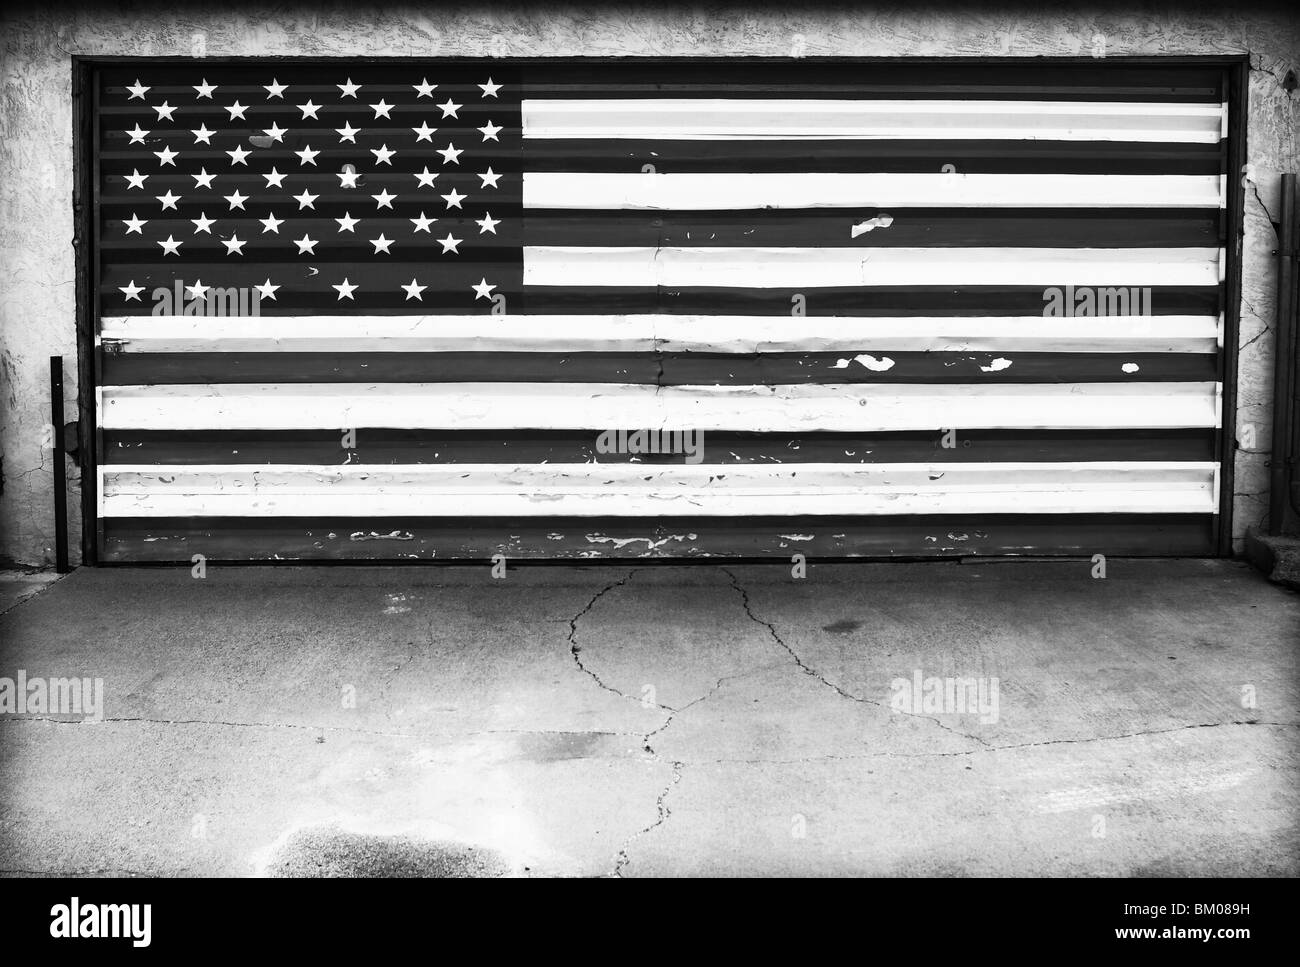 American flag on garage door Stock Photo